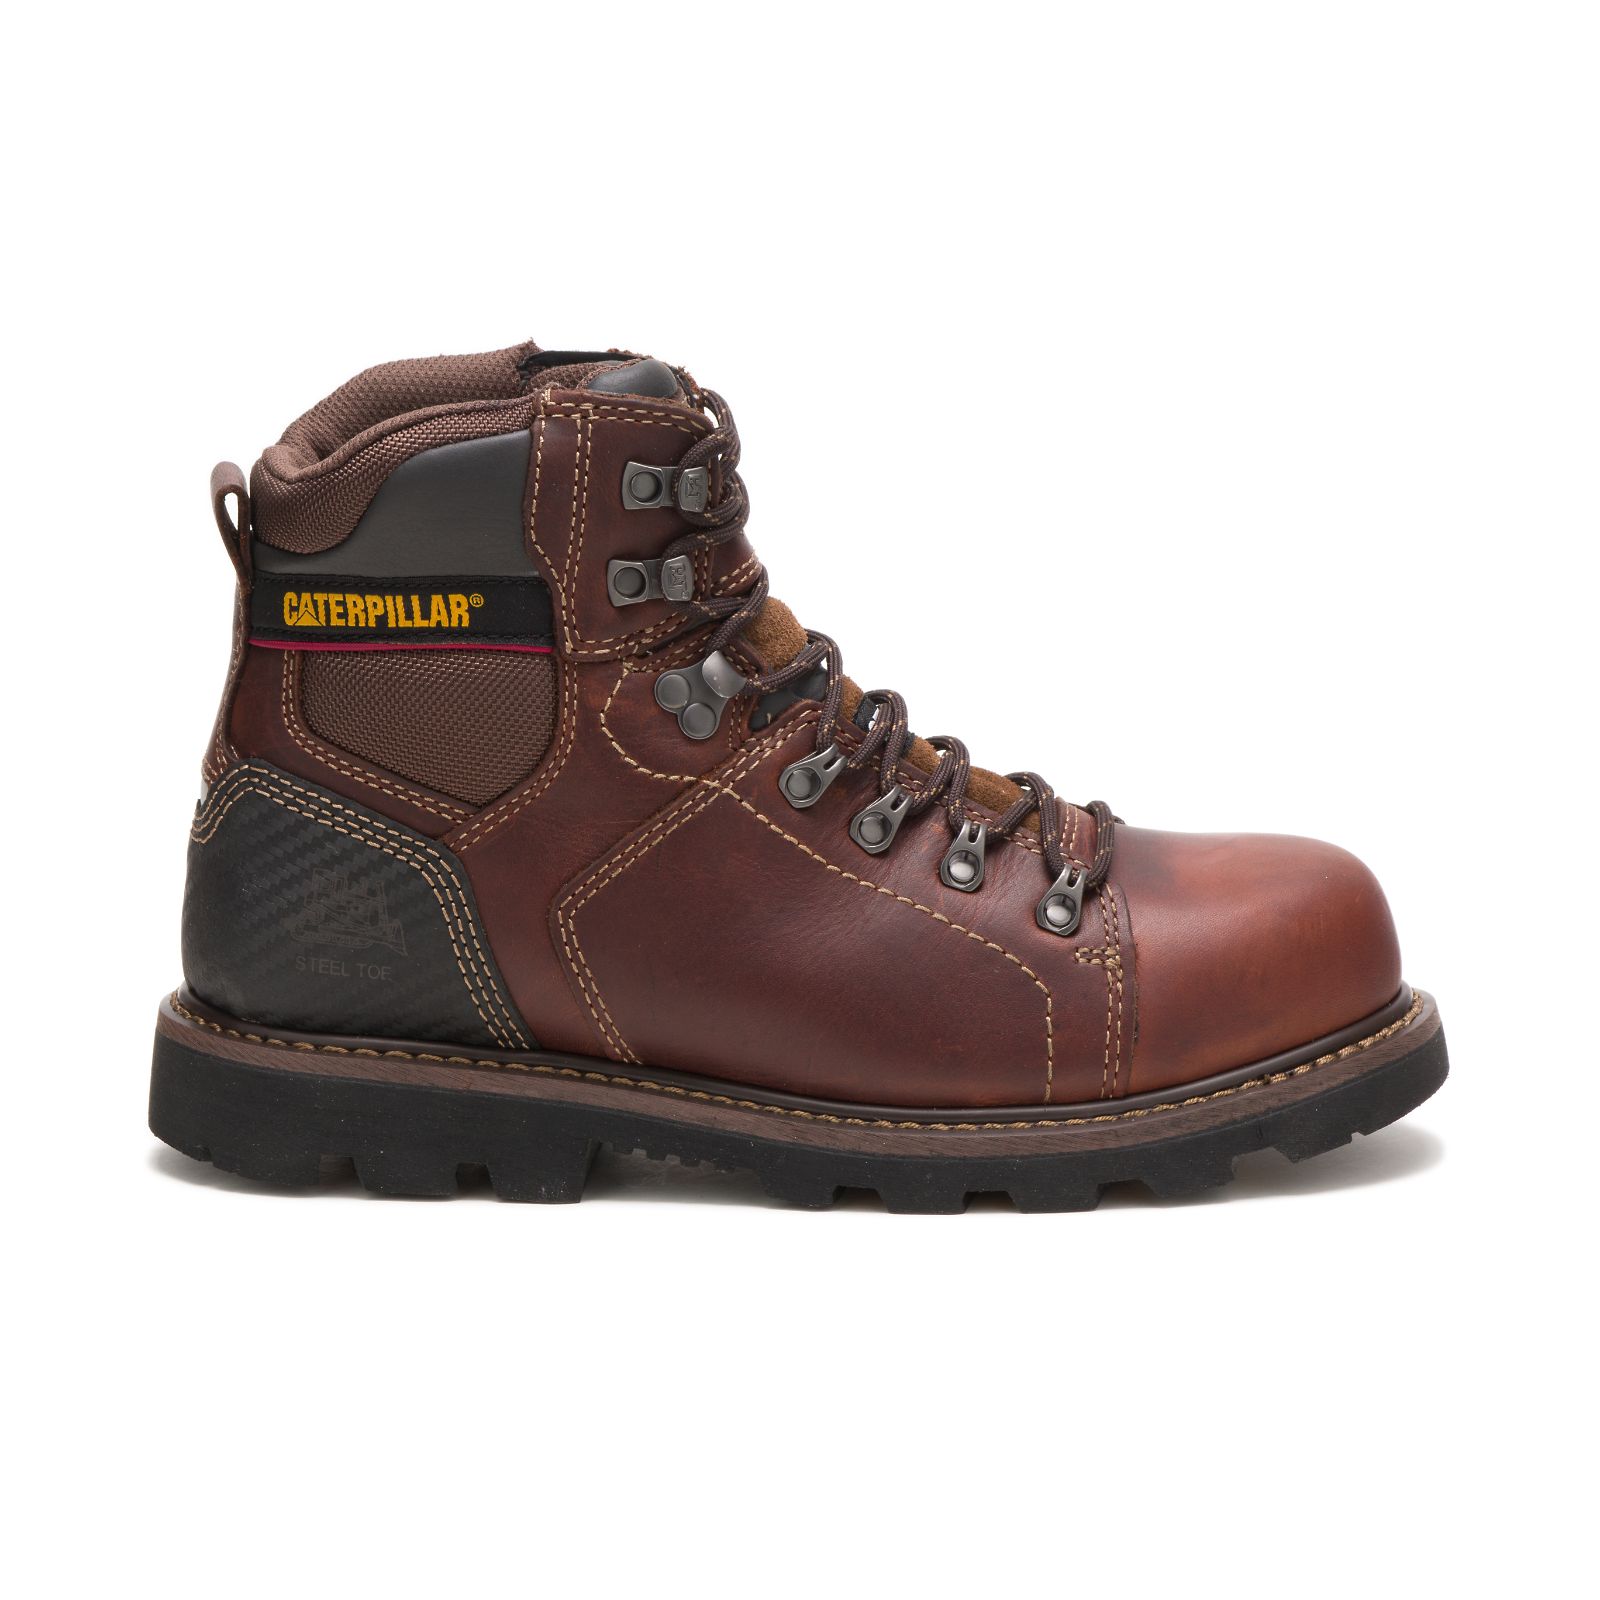 Caterpillar Alaska 2.0 Steel Toe - Mens Work Boots - Brown - NZ (286GPQWTK)